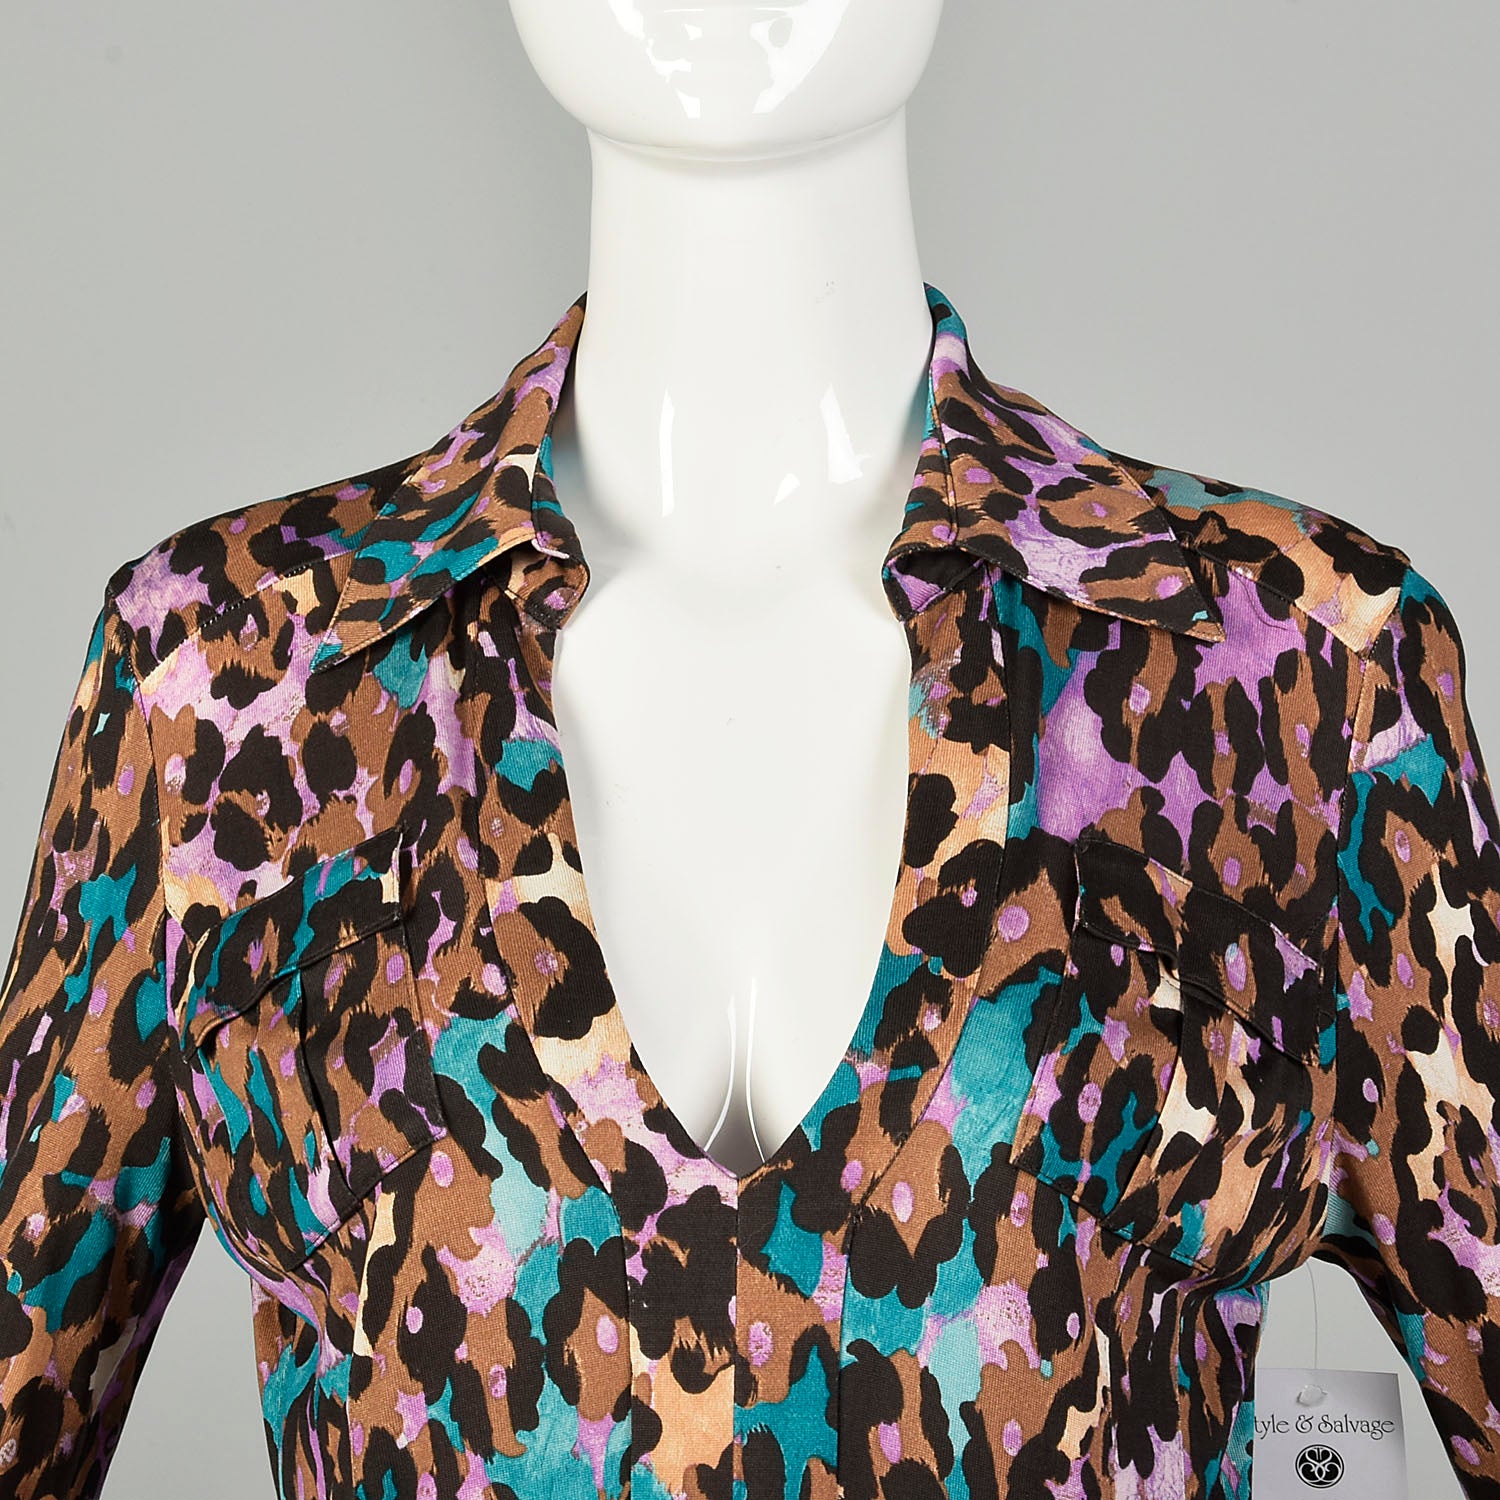 Medium Diane Von Furstenberg Animal Print Dress Silk Jersey Cuffed Sleeves